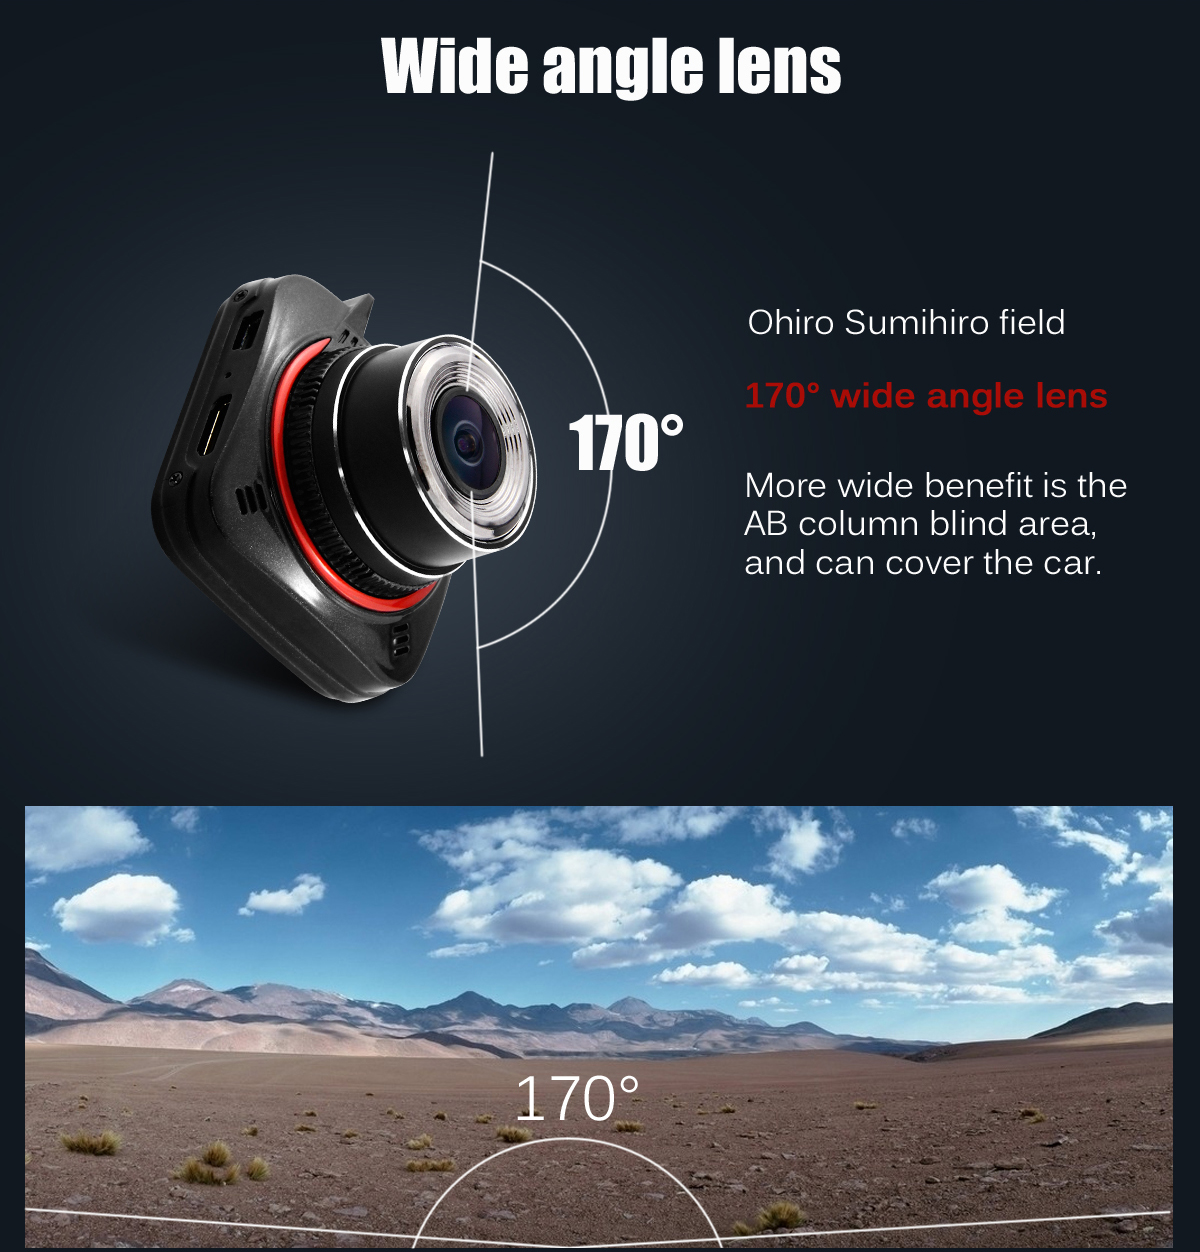 G52D Car DVR Video Recorder Ambarella A7LA50 170 Degree Super Wide Angle Lens